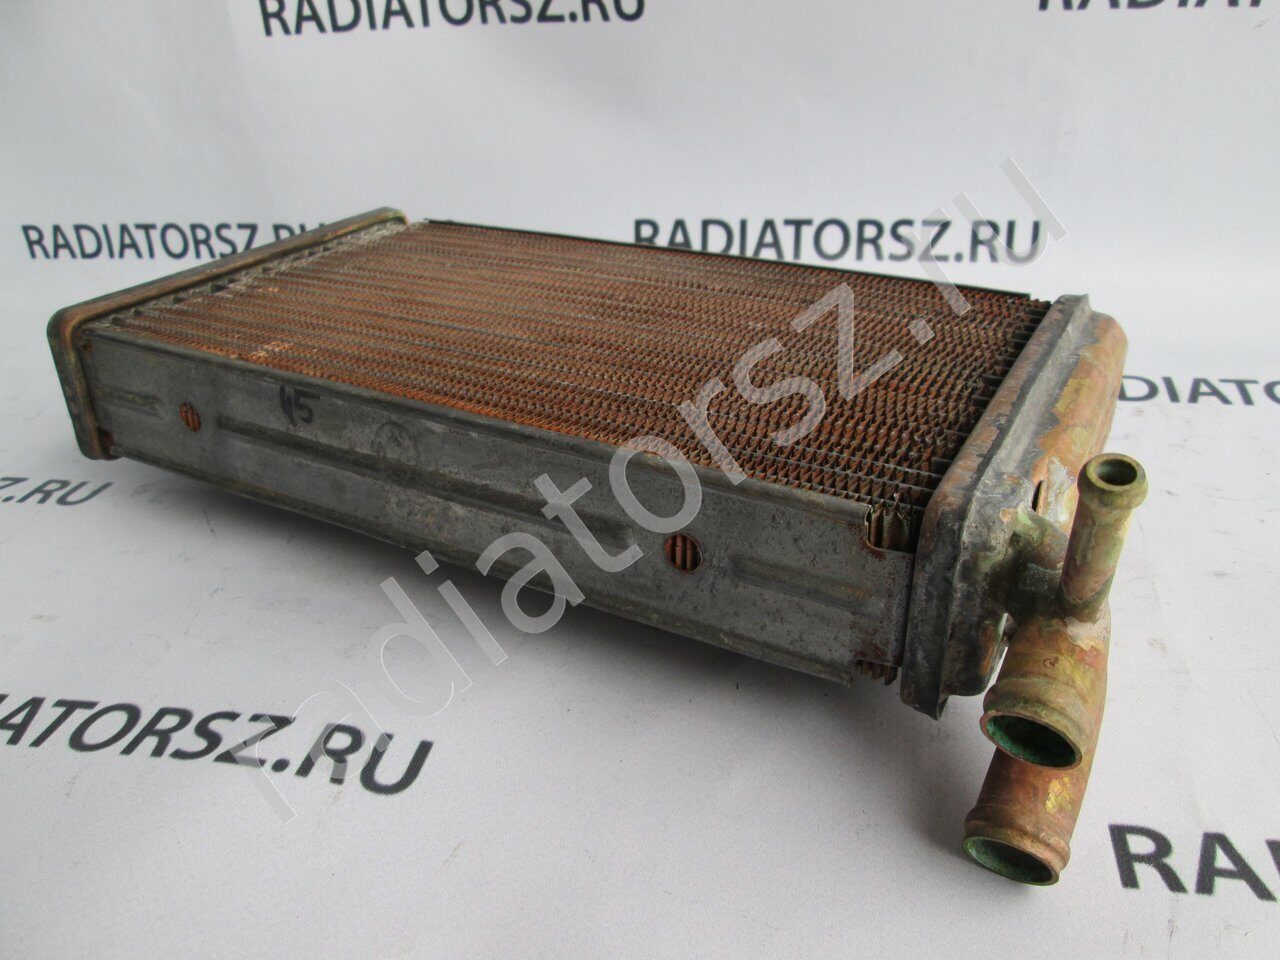 Радиатор отопителя ВАЗ 2110, 2111, 2112 (старого образца) ДМЗ 2110-8101060